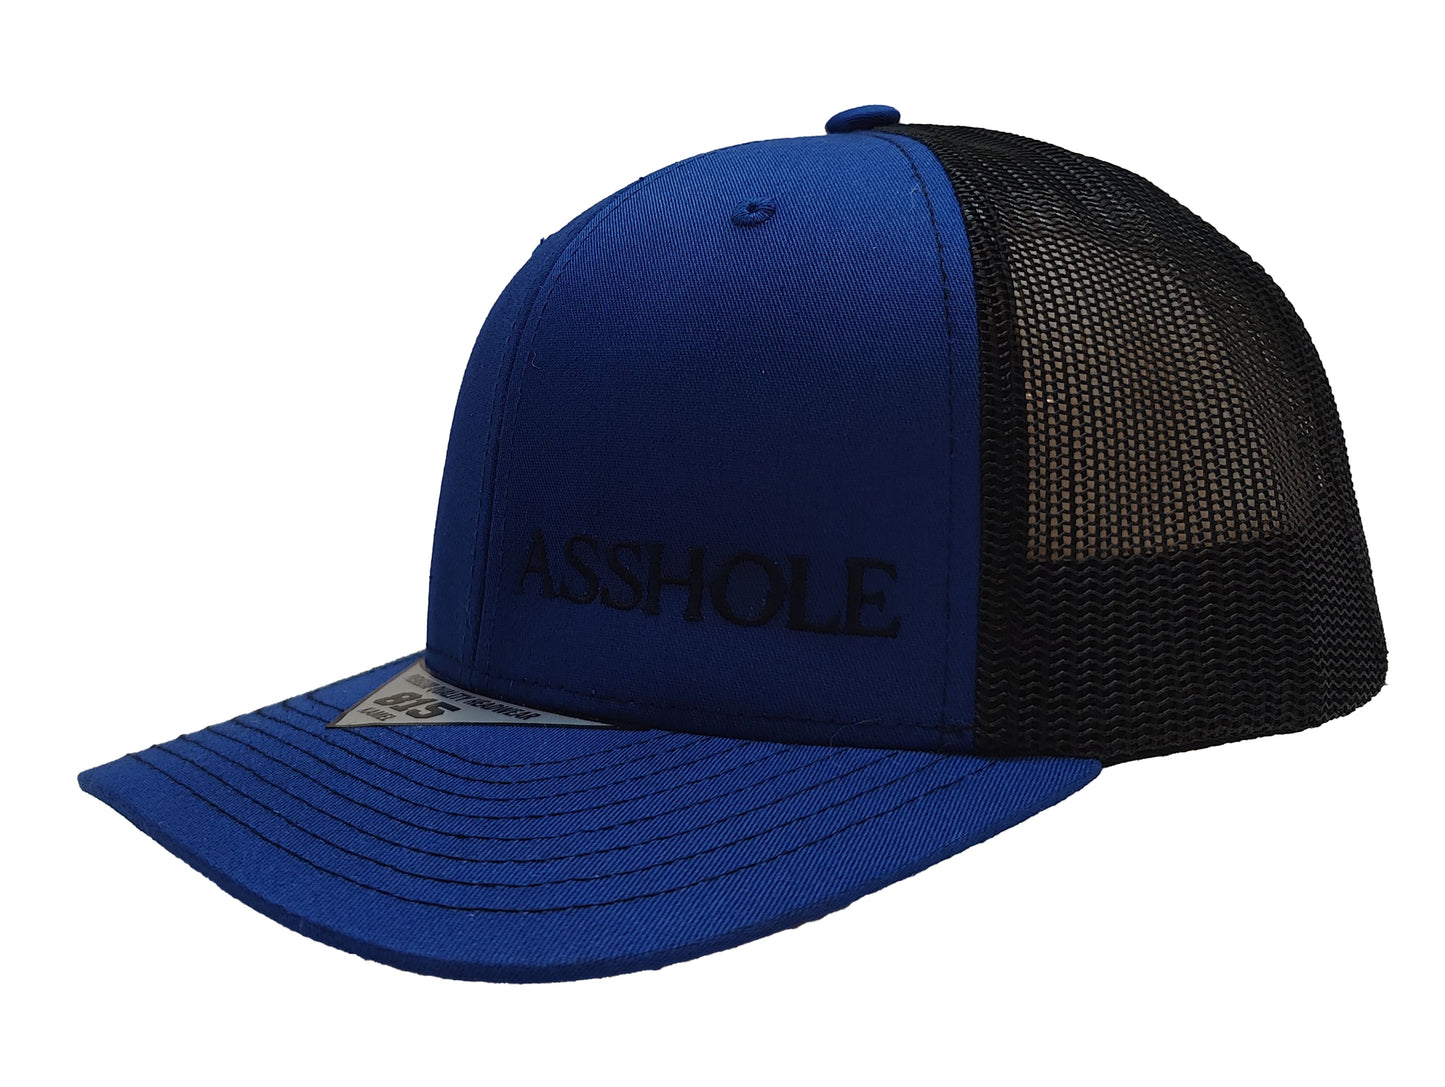 ASSHOLE Kamel Adult Hat 815 Blue / Black